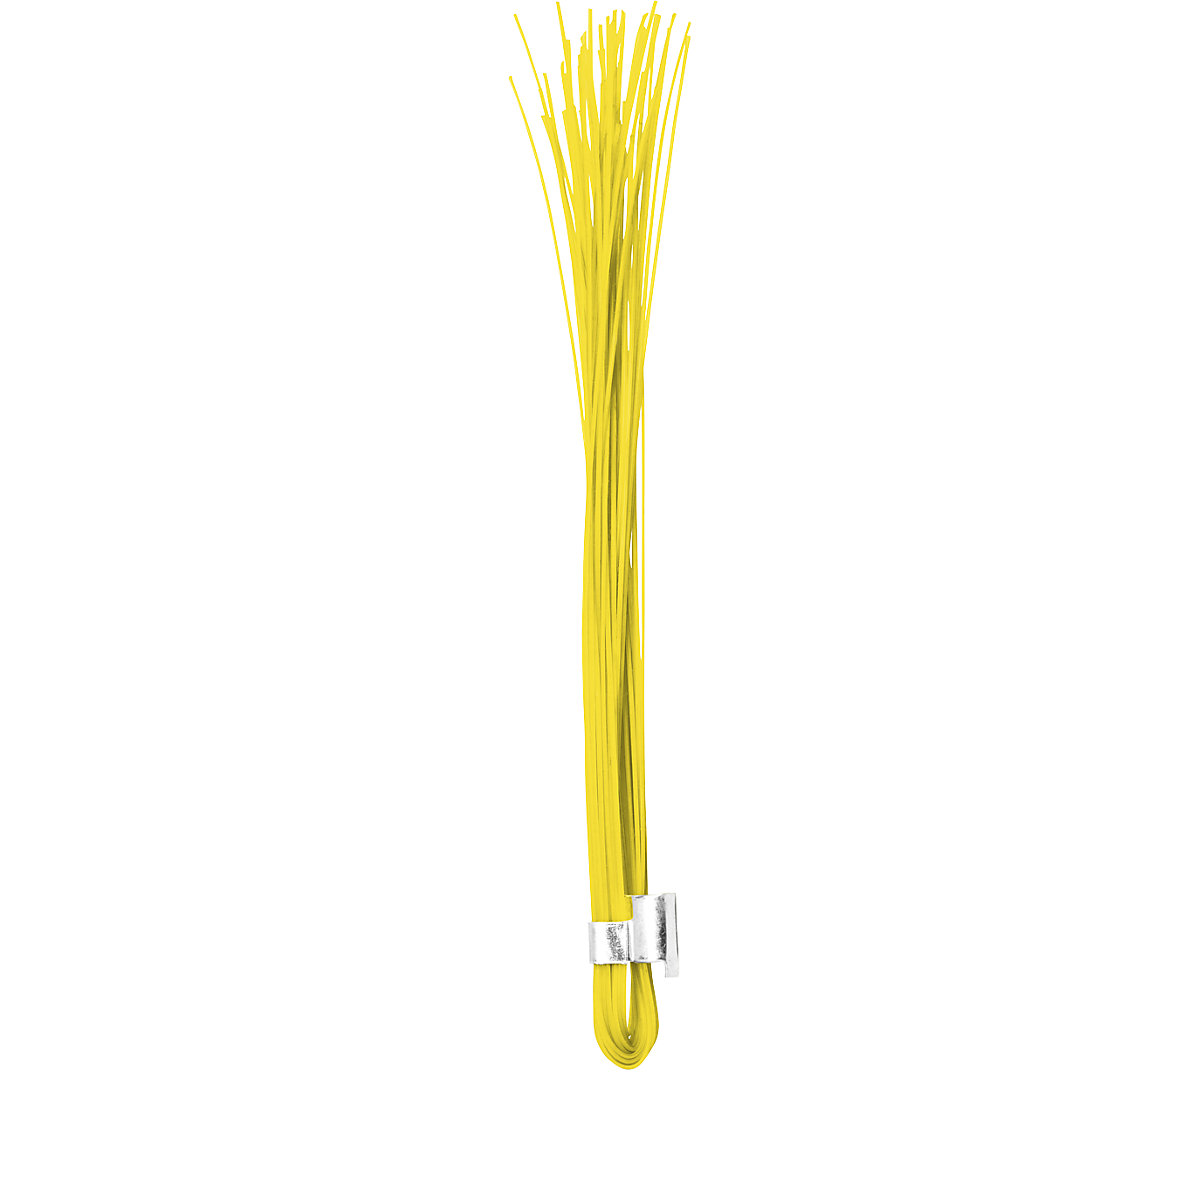 Tracciatori – Ampere, confezione da 500 pz., giallo fluorescente-7